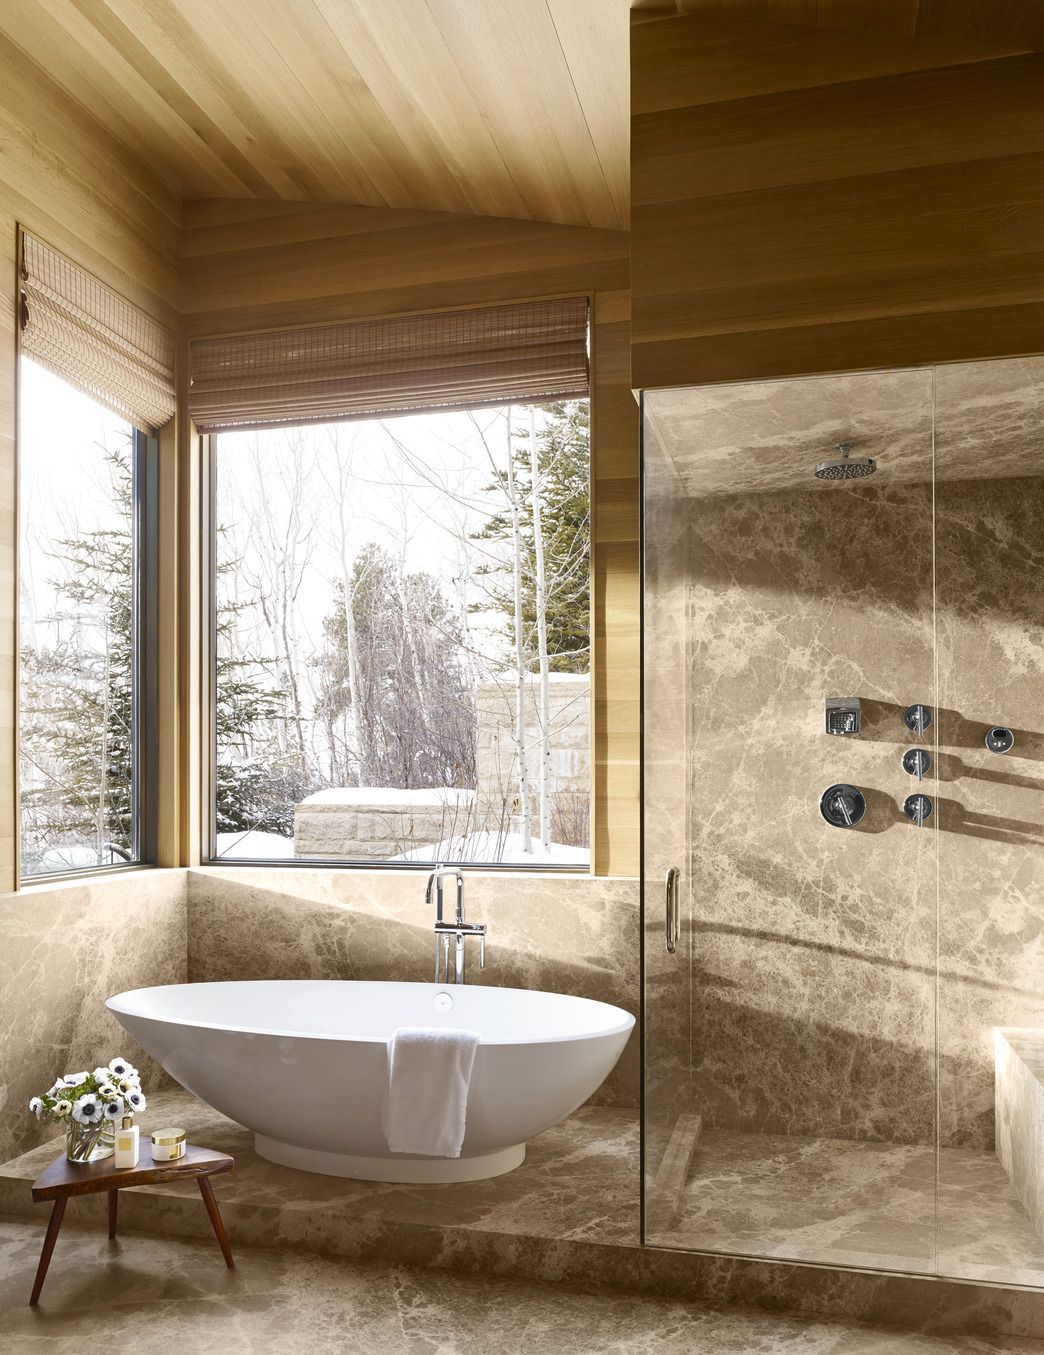 Best Spa Bathroom Ideas - Essentials for a Spa-Like Bath